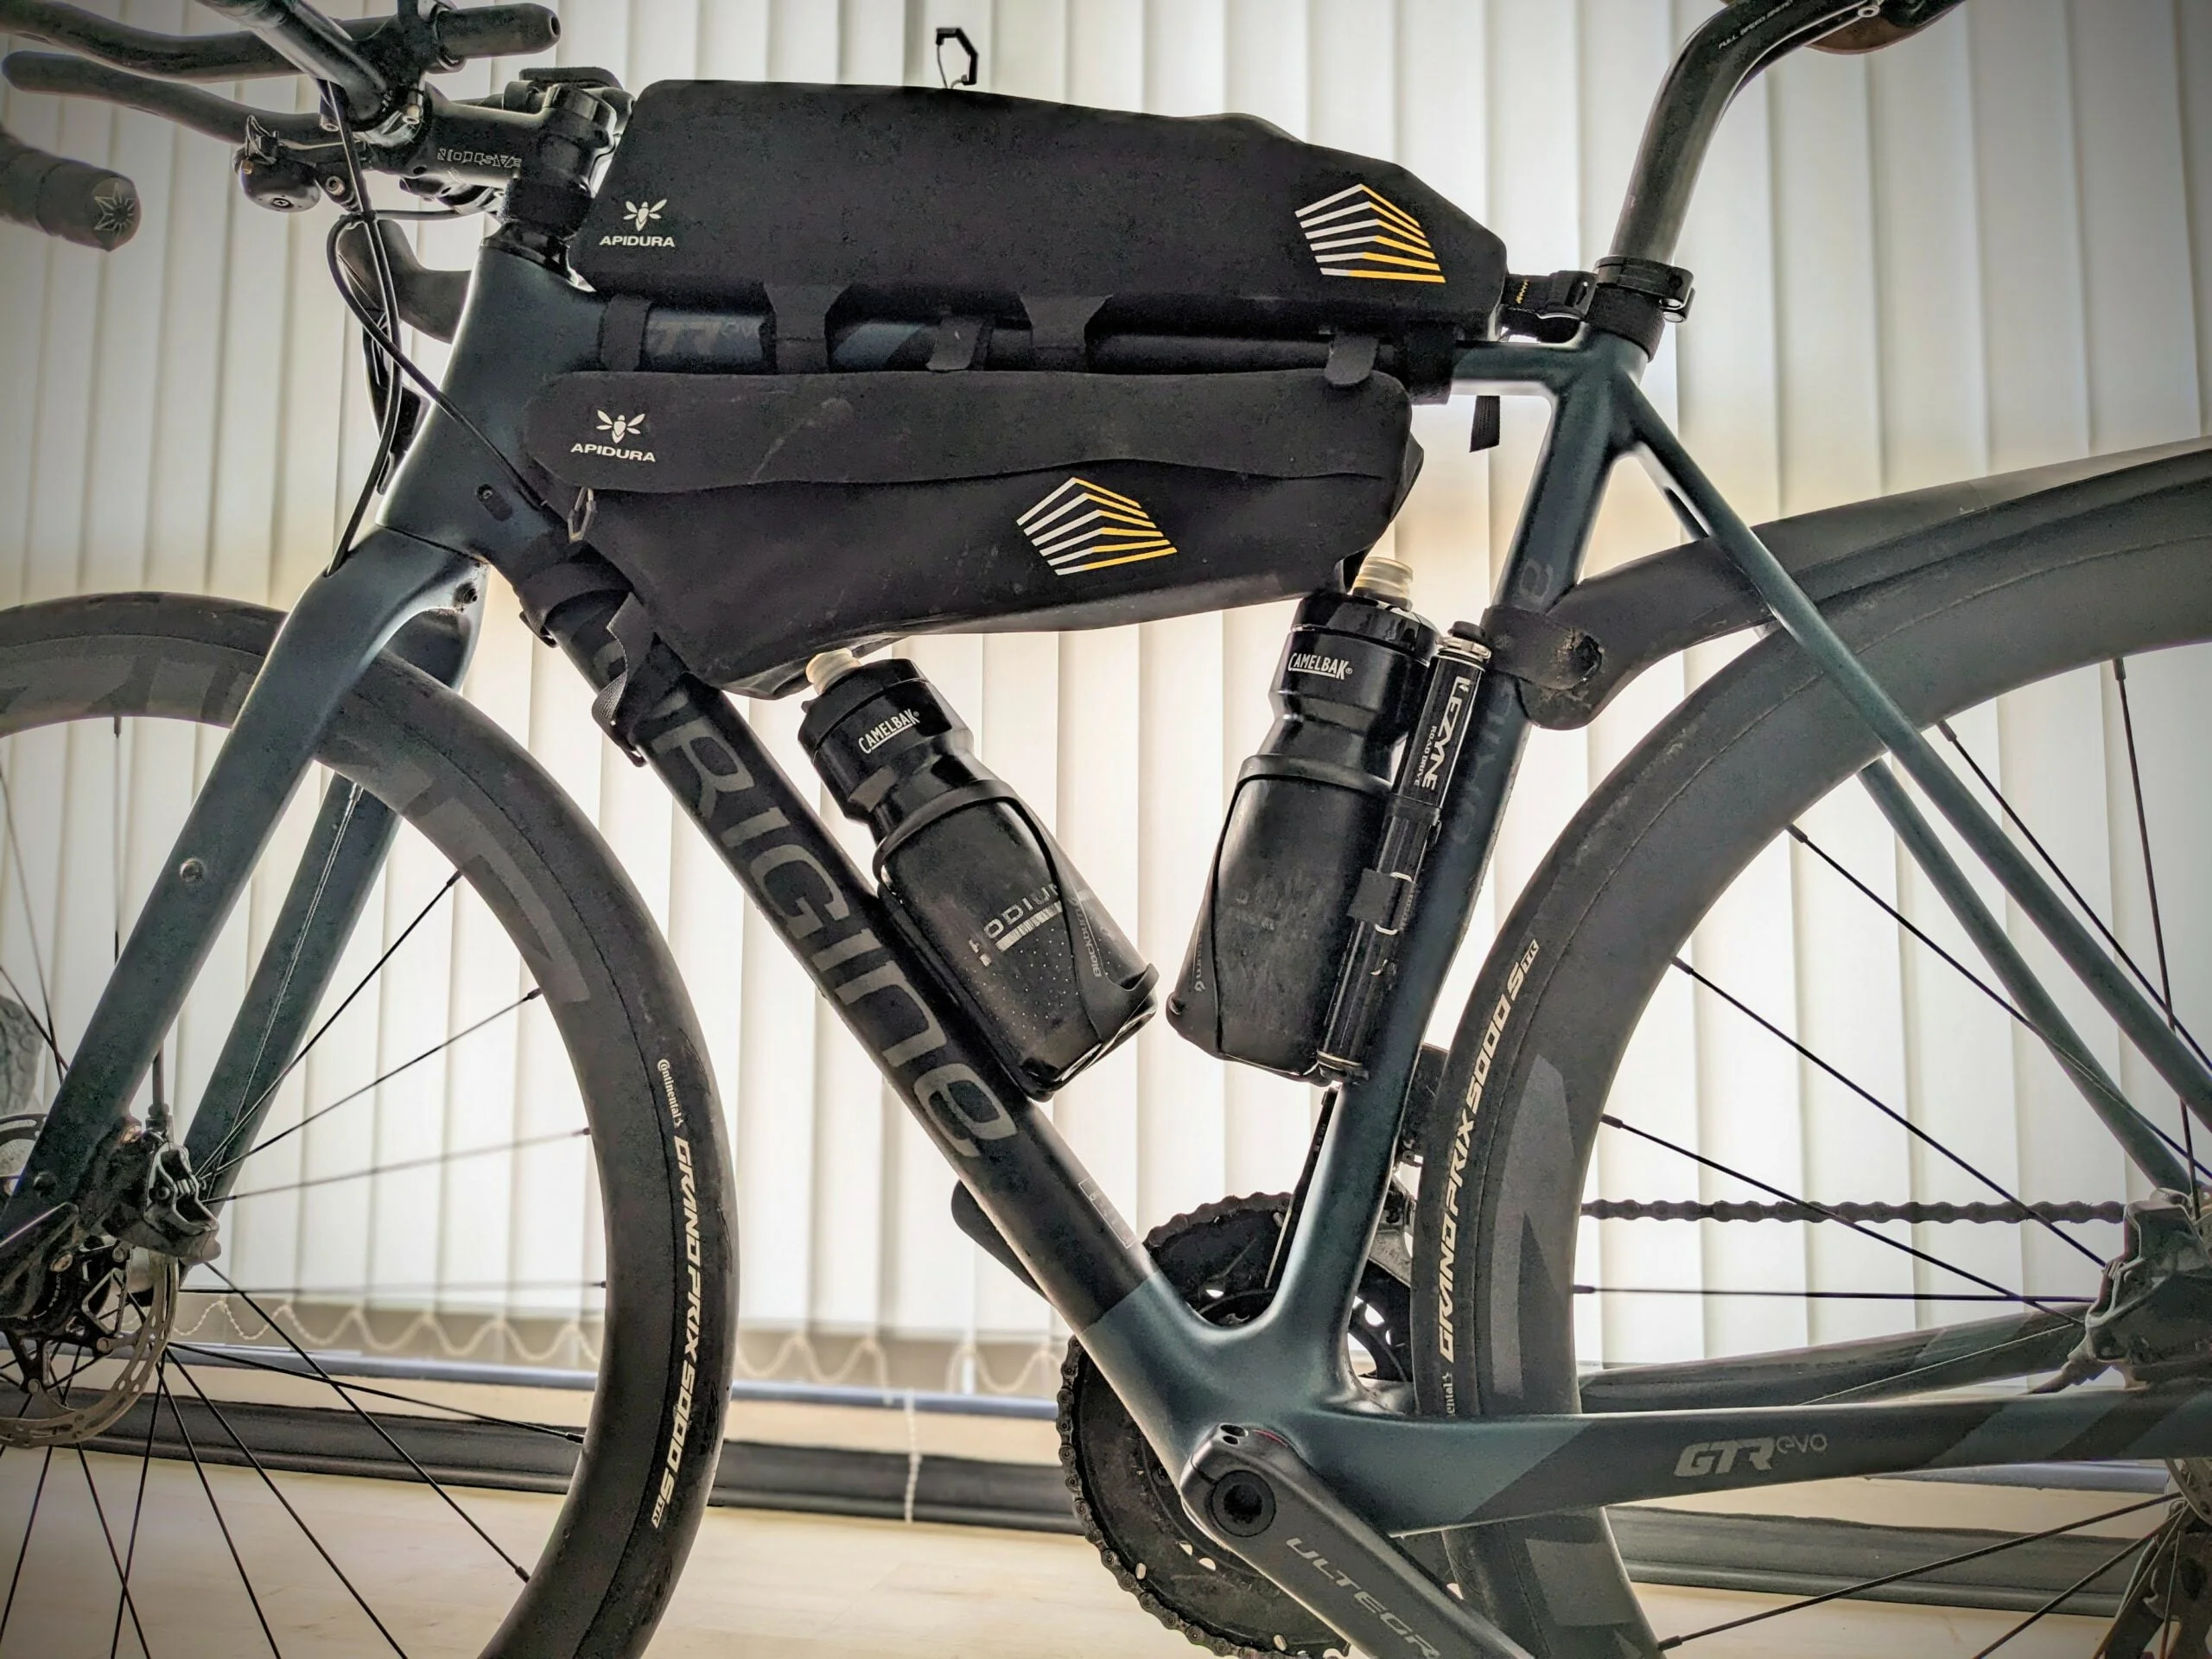 Porte-bouteille de vélo pour vélo avec accessoires de vélo pour